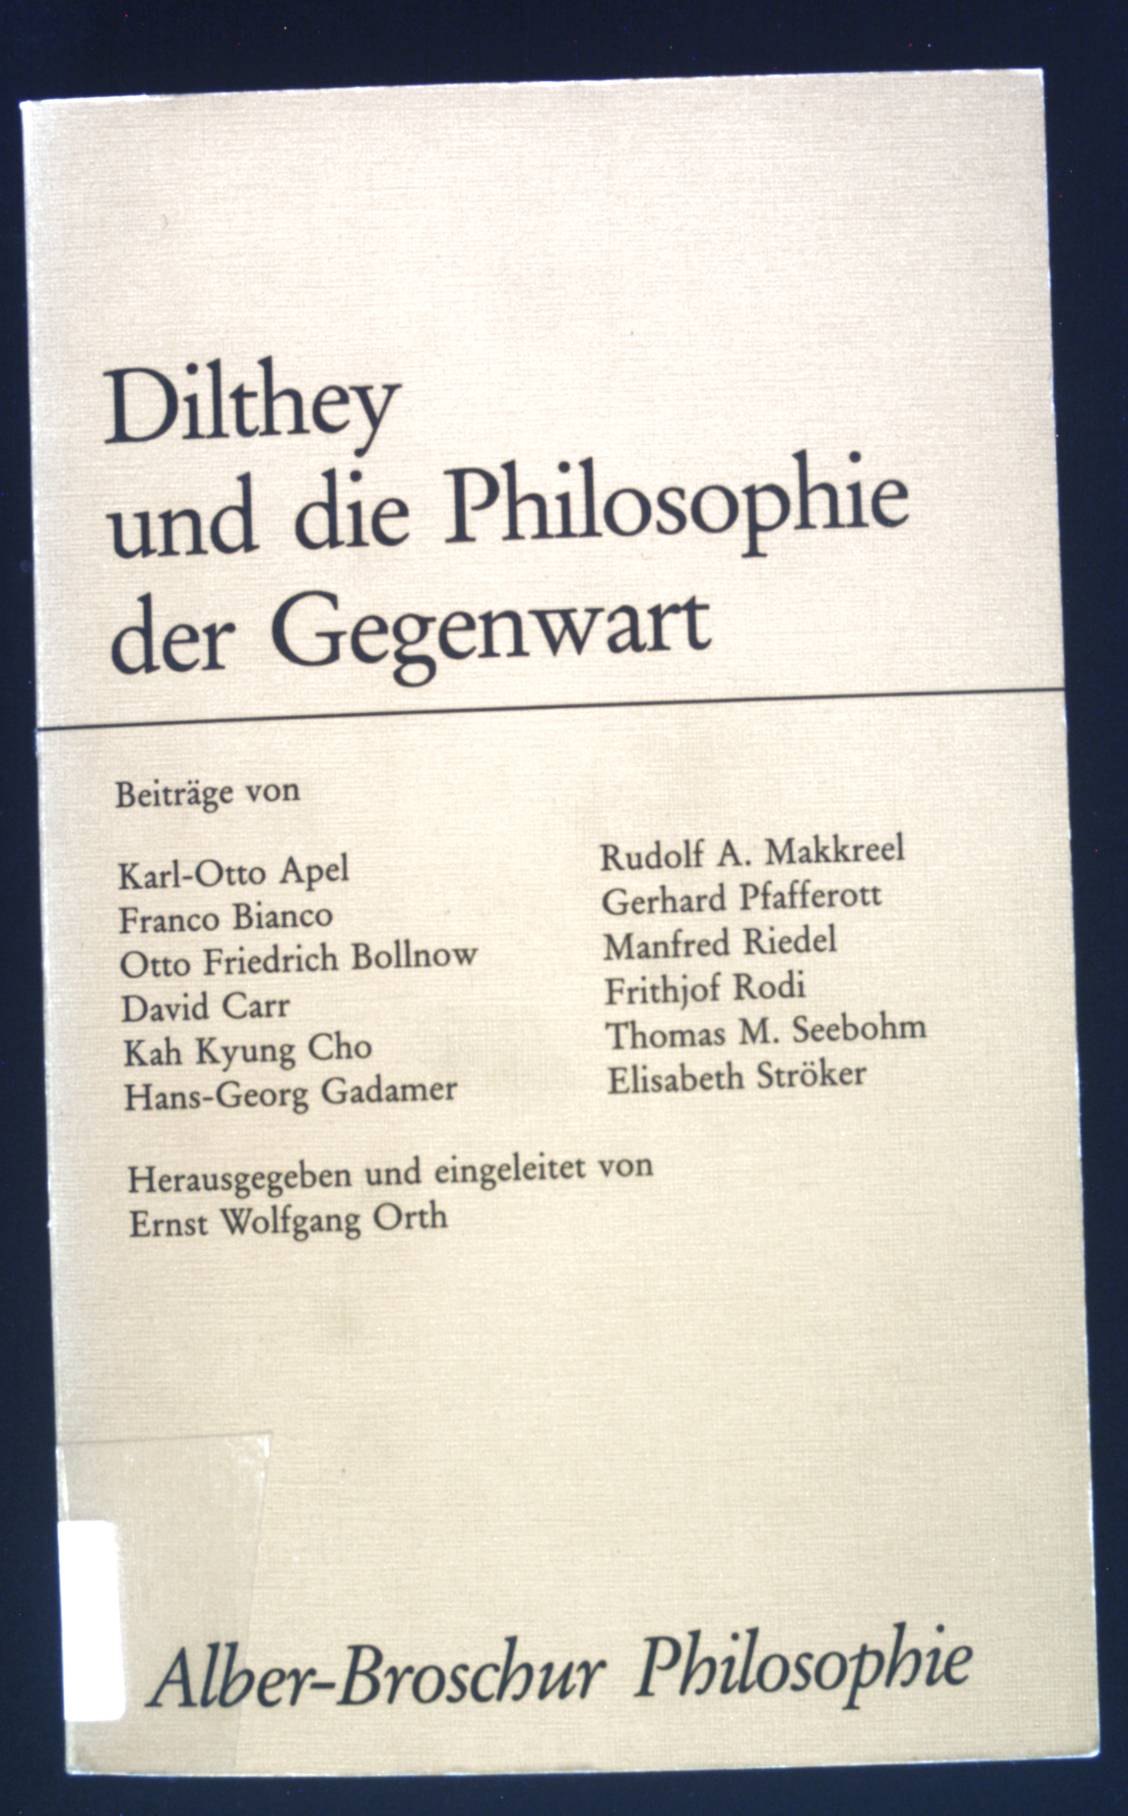 Dilthey und die Philosophie der Gegenwart : Beitr. Alber-Broschur Philosophie; Sonderband der Phänomenologischen Forschungen - Apel, Karl-Otto und Ernst Wolfgang Orth